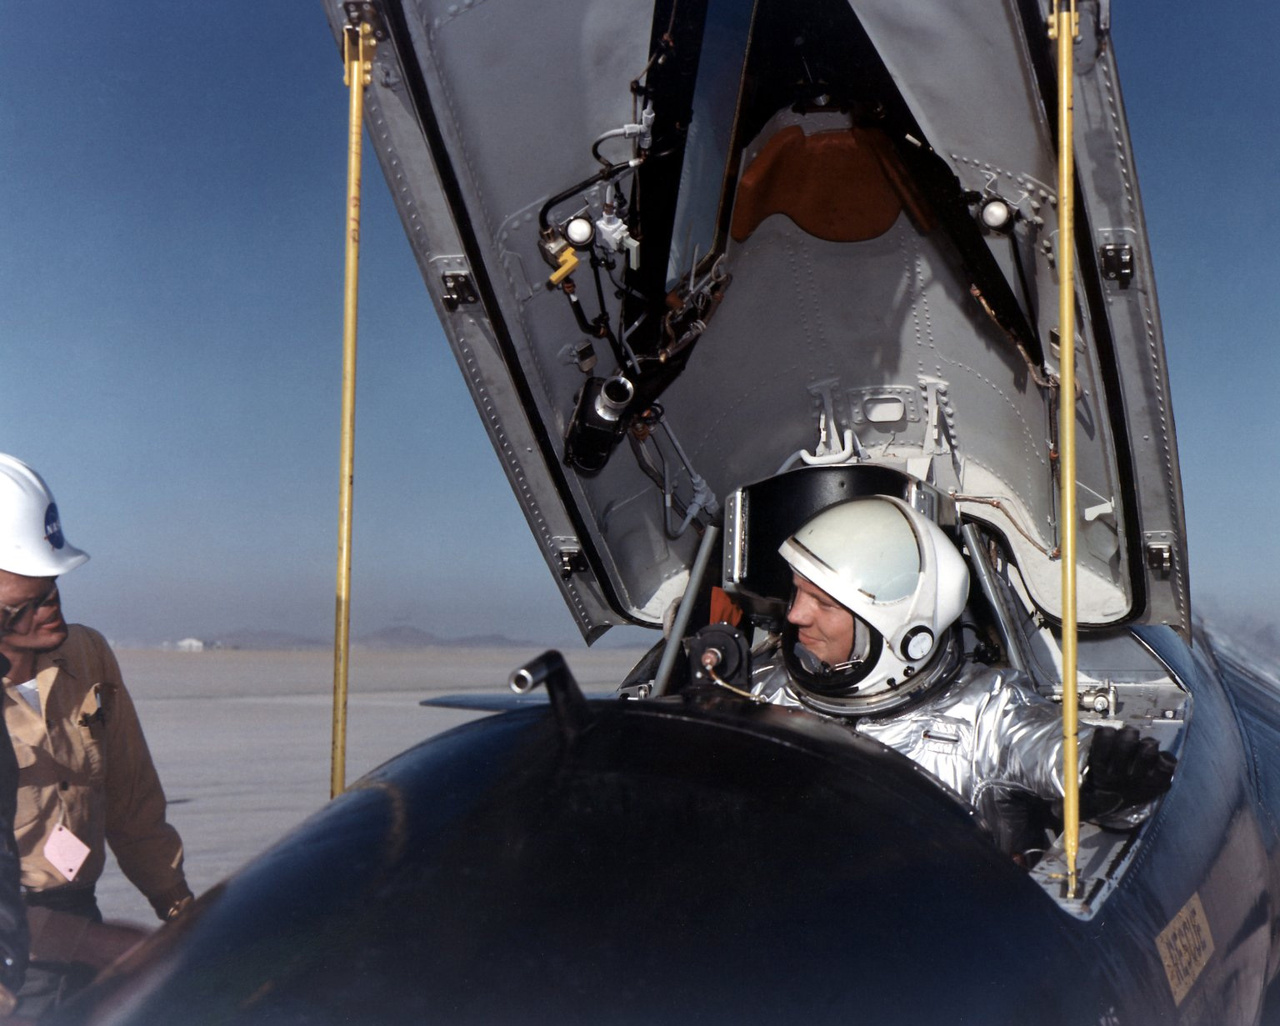 A film elején bemutatott rázós repülés egyike volt Armstrong hét X-15-ös repülésének. A haditengerészet pilótája a koreai háborúban 78 bevetésben vett részt Grumman F9F Panther sugárhajtású vadászgéppel. 1955-ben repülőmérnöki diplomát szerzett és még abban az évben csatlakozott a NASA elődjéhez, a NACA-hoz, hogy kutatómérnök pilótaként részt vegyen a nagy sebességű repülést kutató programban. Két társával elsőként repülhetett a NASA X-15-ös rakétarepülőjével, ami az amerikai űrprogram kezdetén – 1959 és 1968 között – egy sor űrrepüléssel kapcsolatos kísérletnek volt főszereplője, és az átala szerzett repülési tapasztalatokat a Mercury, a Gemini, az Apollo és az űrsikló programokban egyaránt felhasználták.